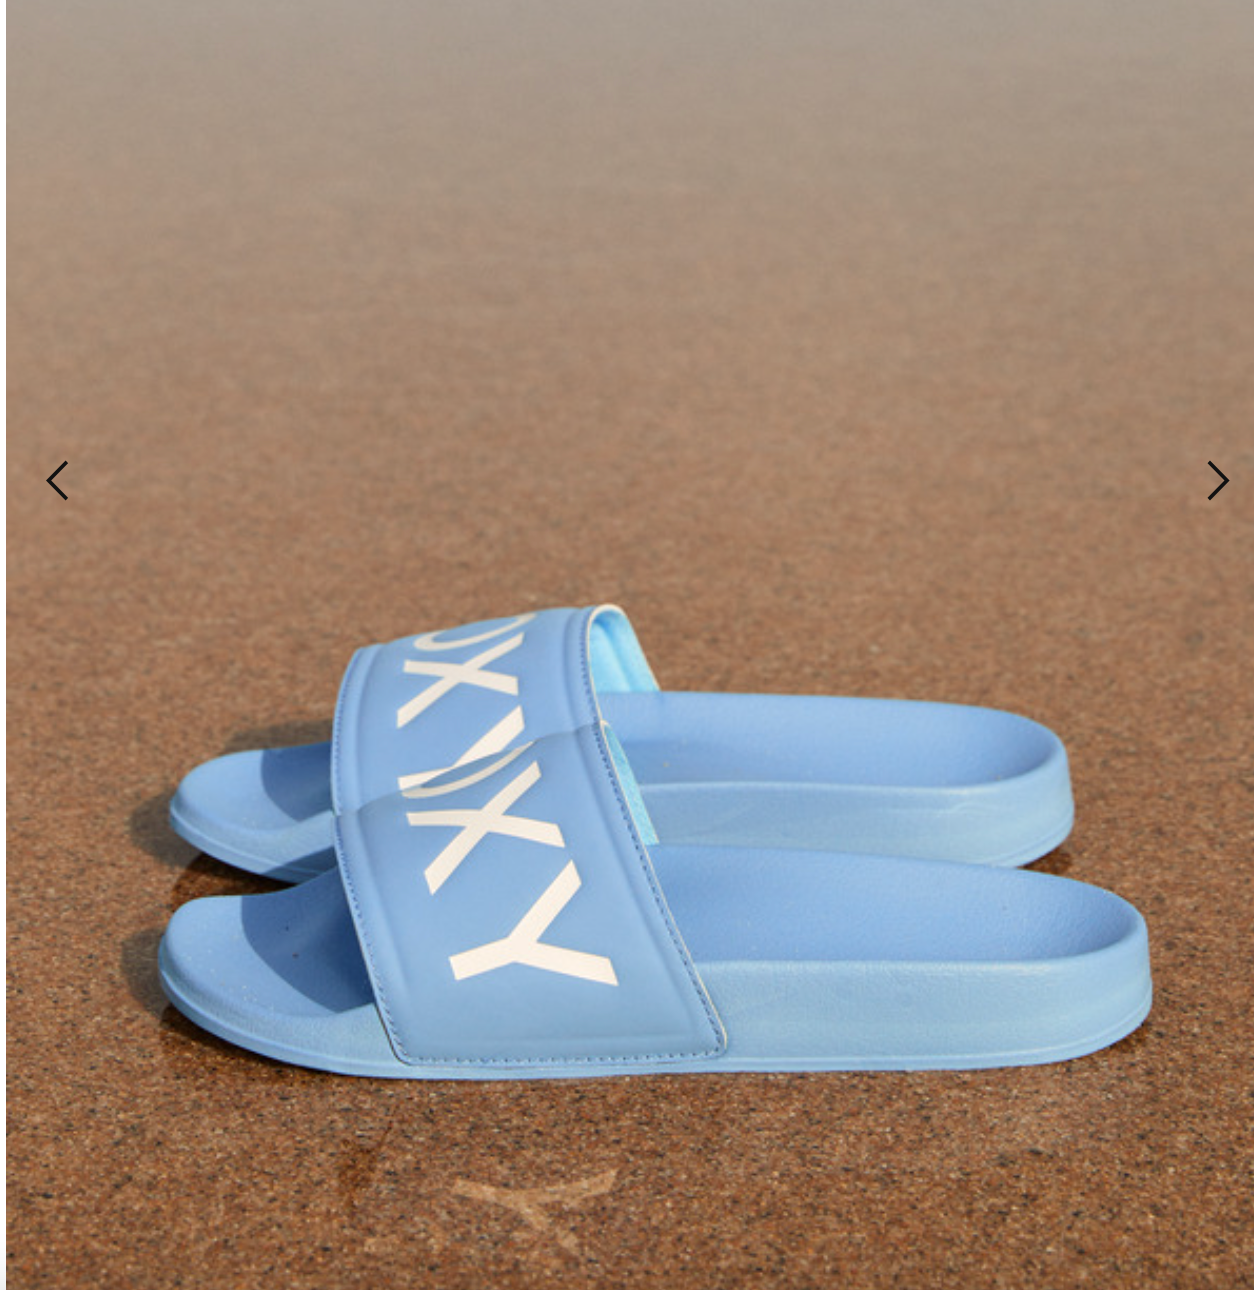 ROXY Slippy - Slider Sandals for Women